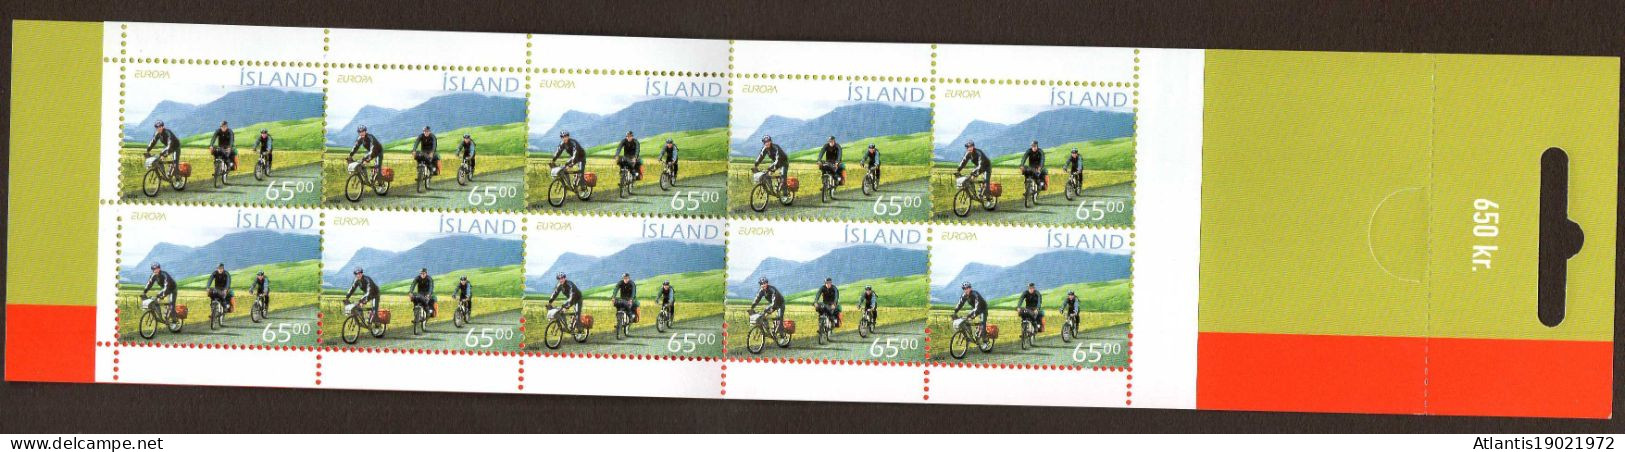 1 MARKENHEFTCHEN ISLAND FAHRRADFAHREN 2004 POSTFRISCH - Postzegelboekjes